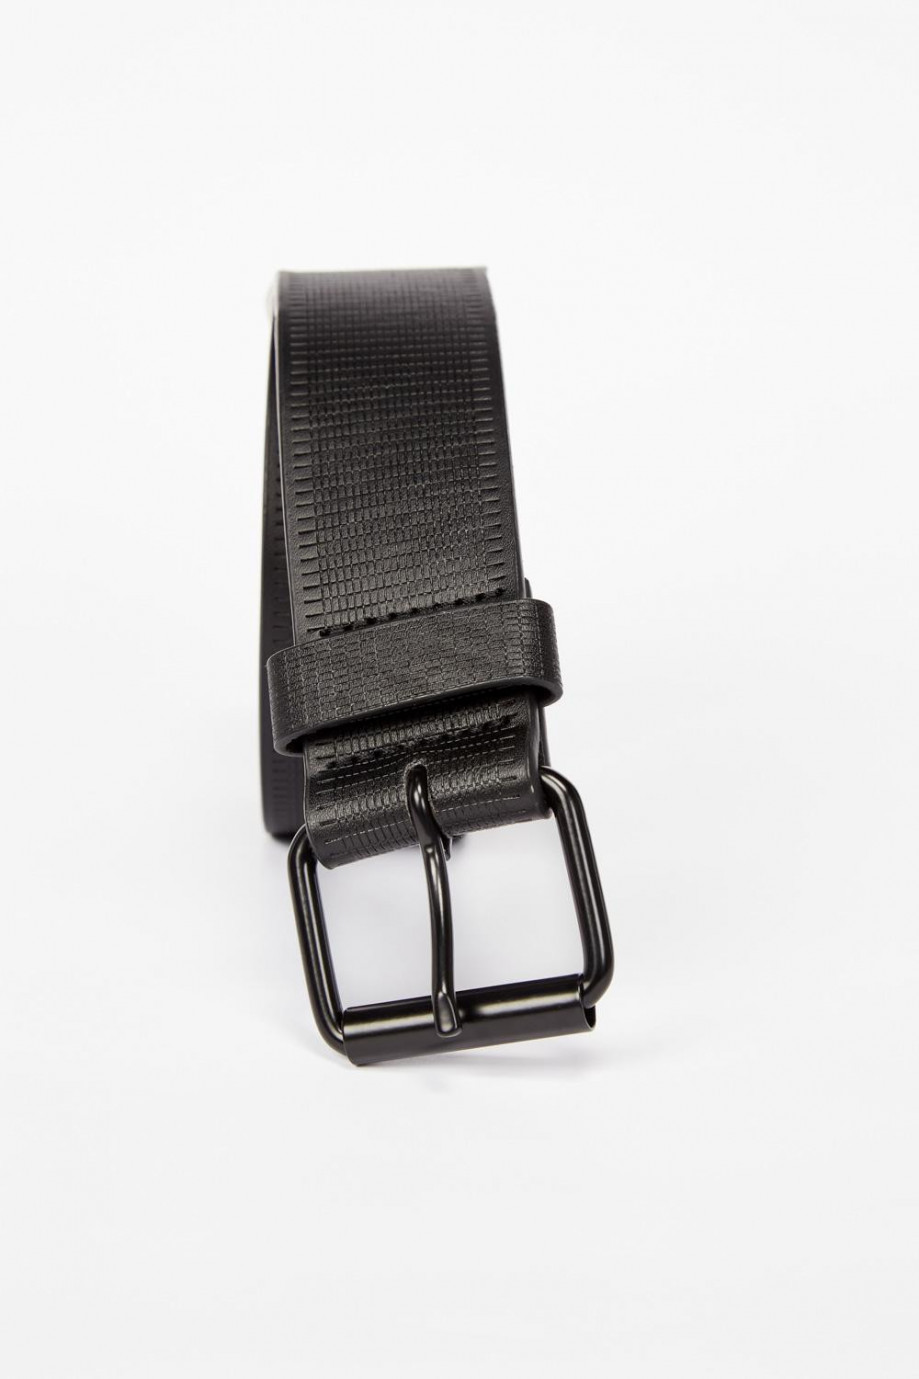 Cinturón en cuerina negro con hebilla metálica y pasador